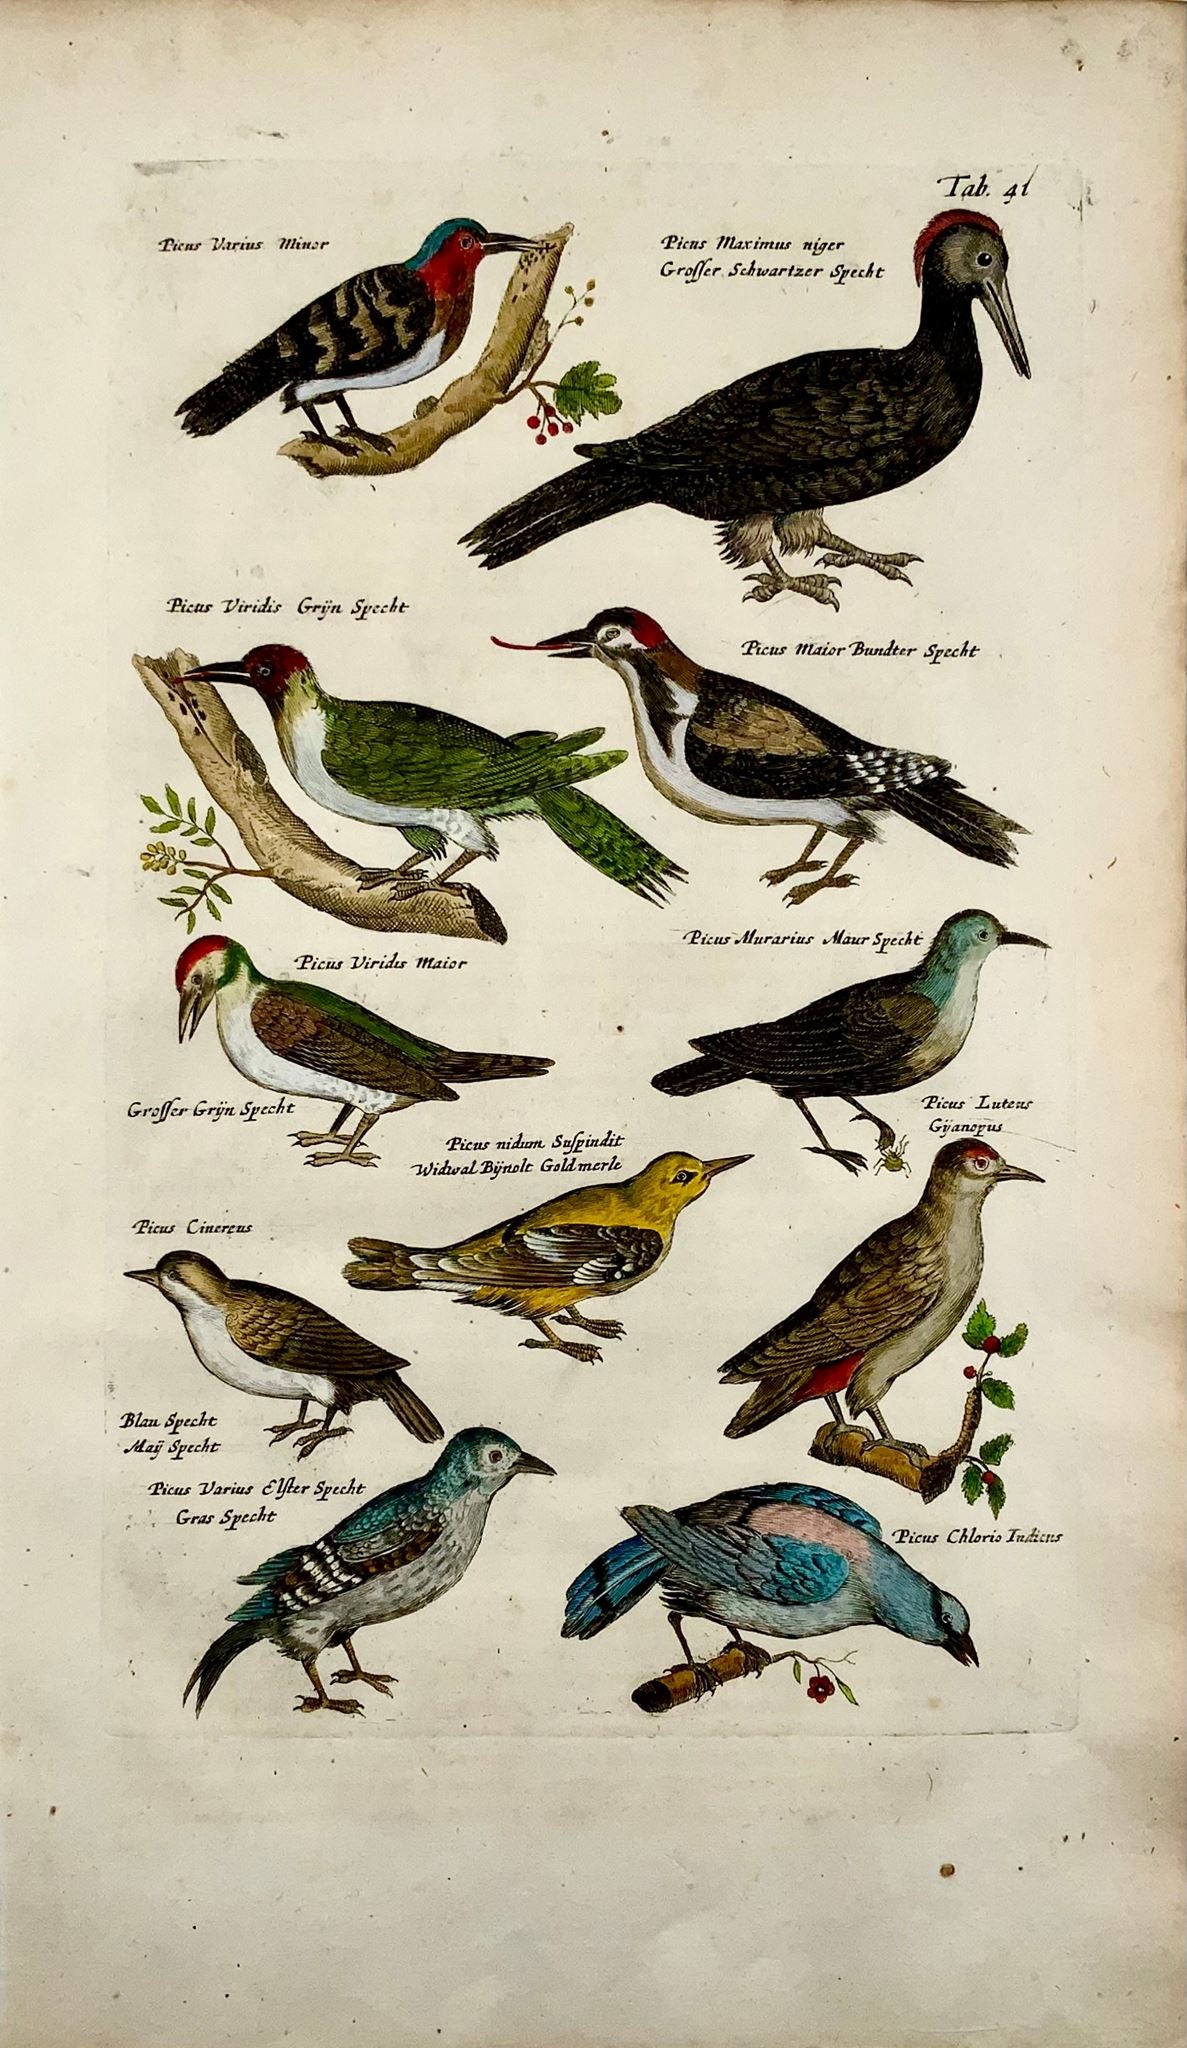 1657 Picus picus, oiseaux, Matthaus Merian, fin in-folio en couleur à la main